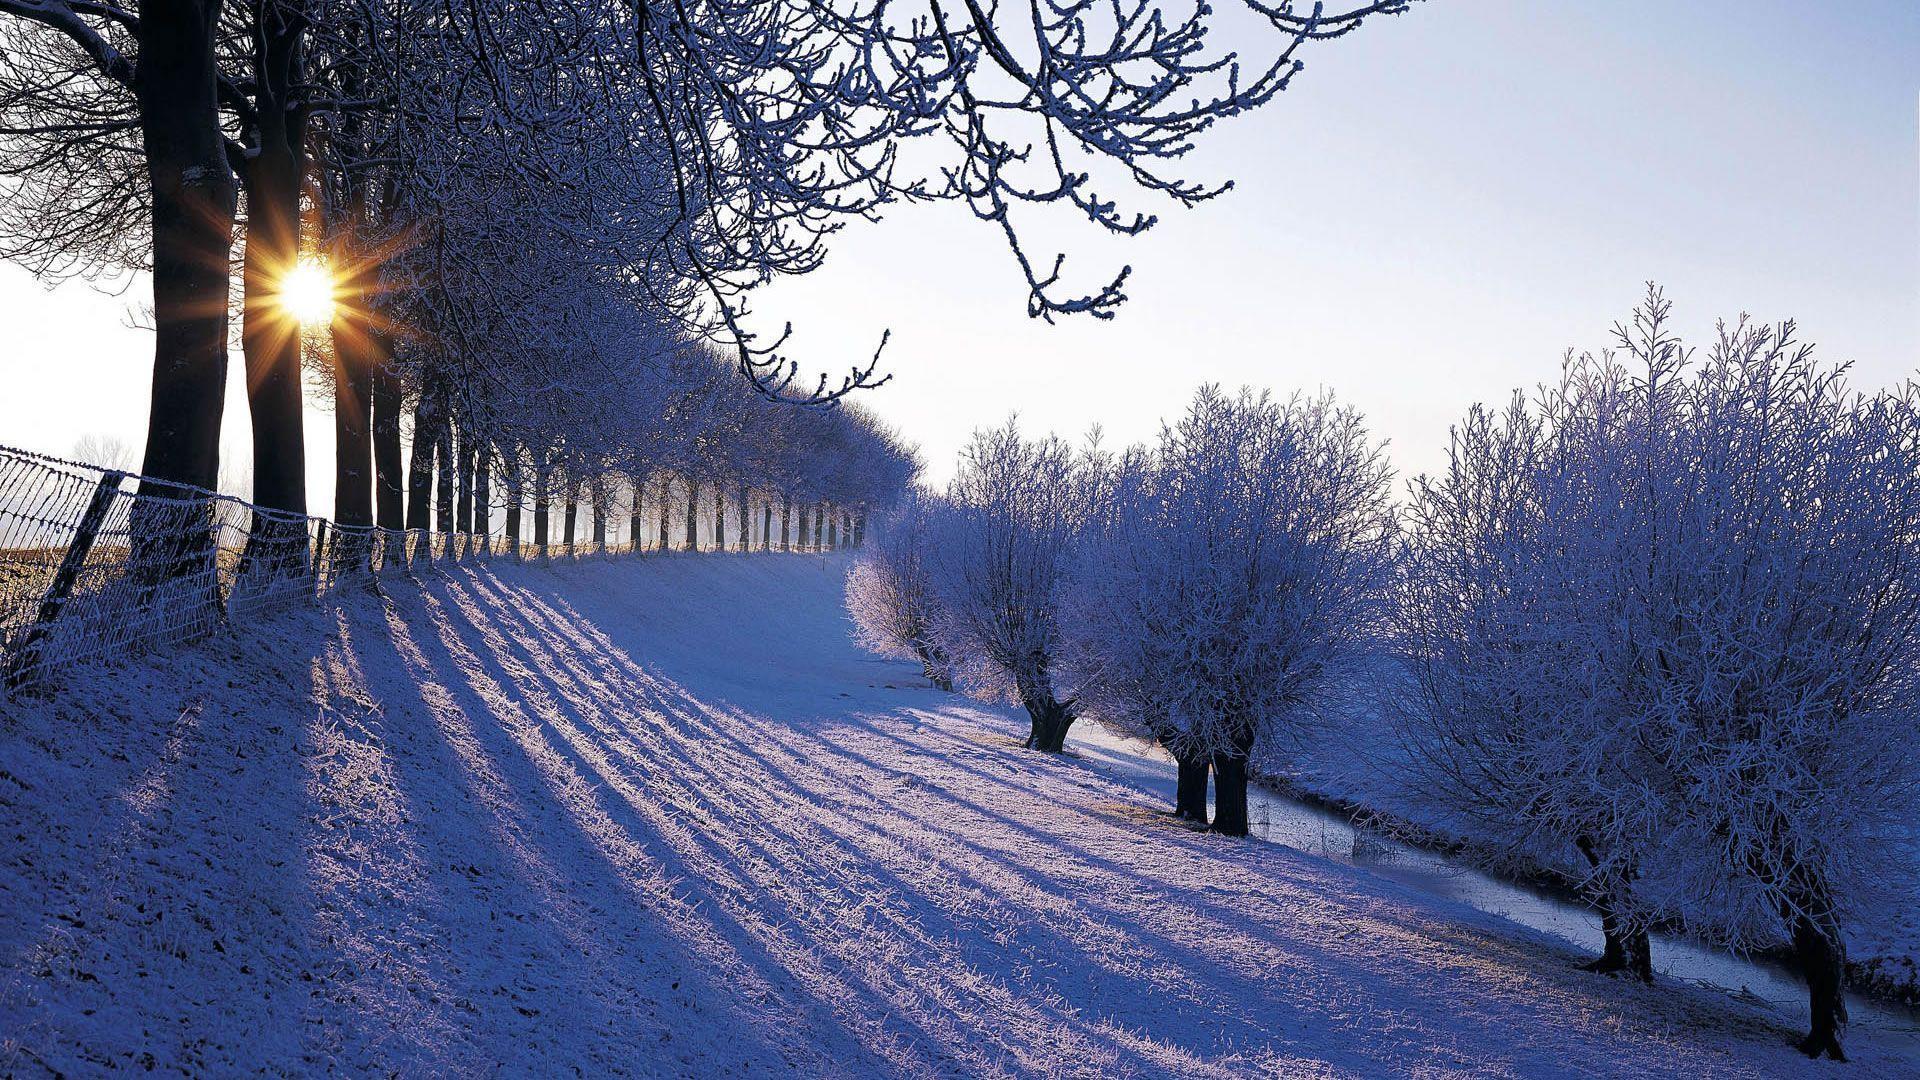 Wallpaper For > Background Image Landscape Winter